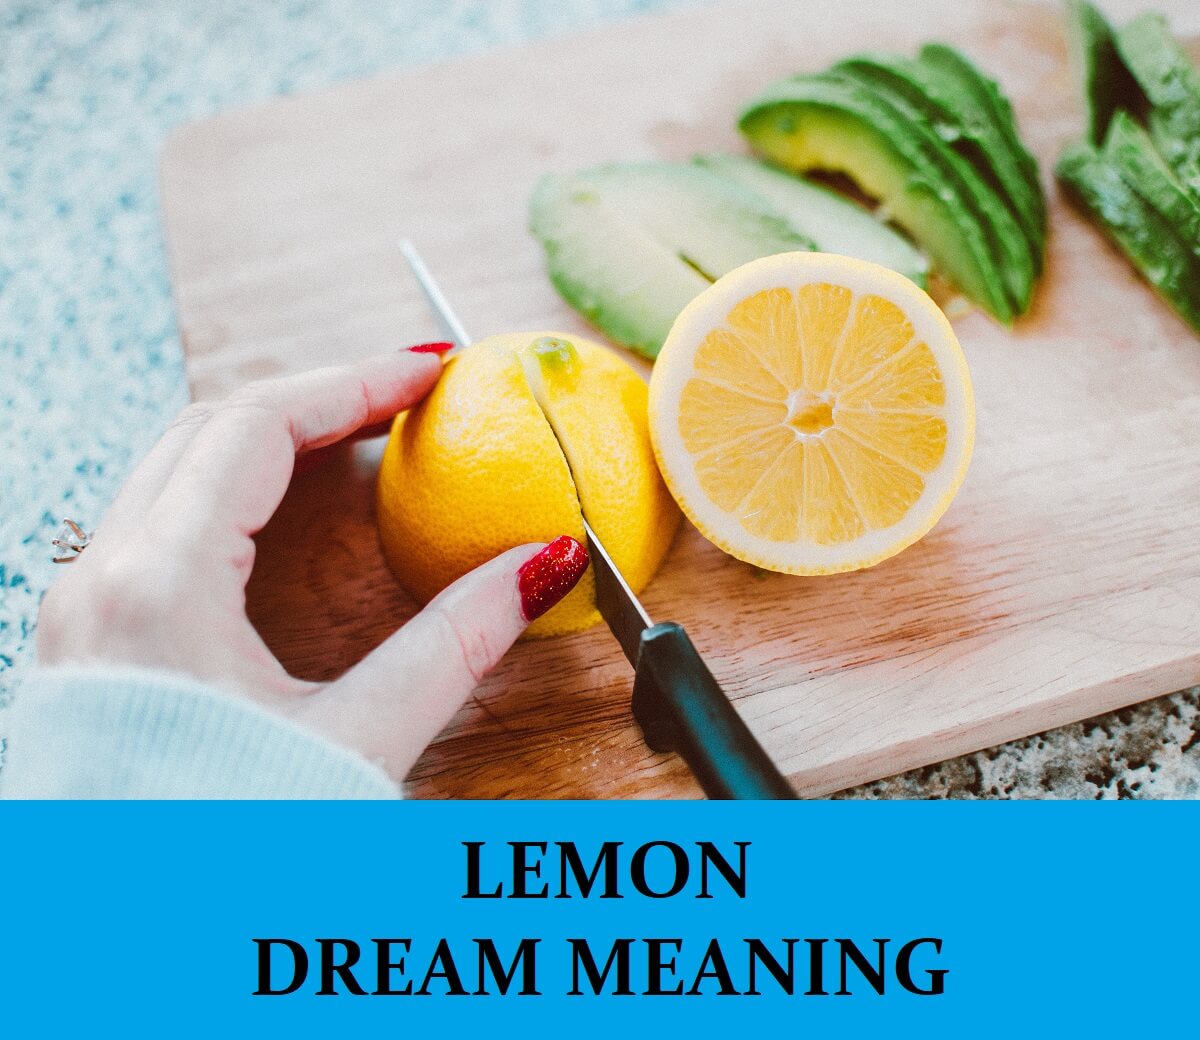 Dream About Lemons